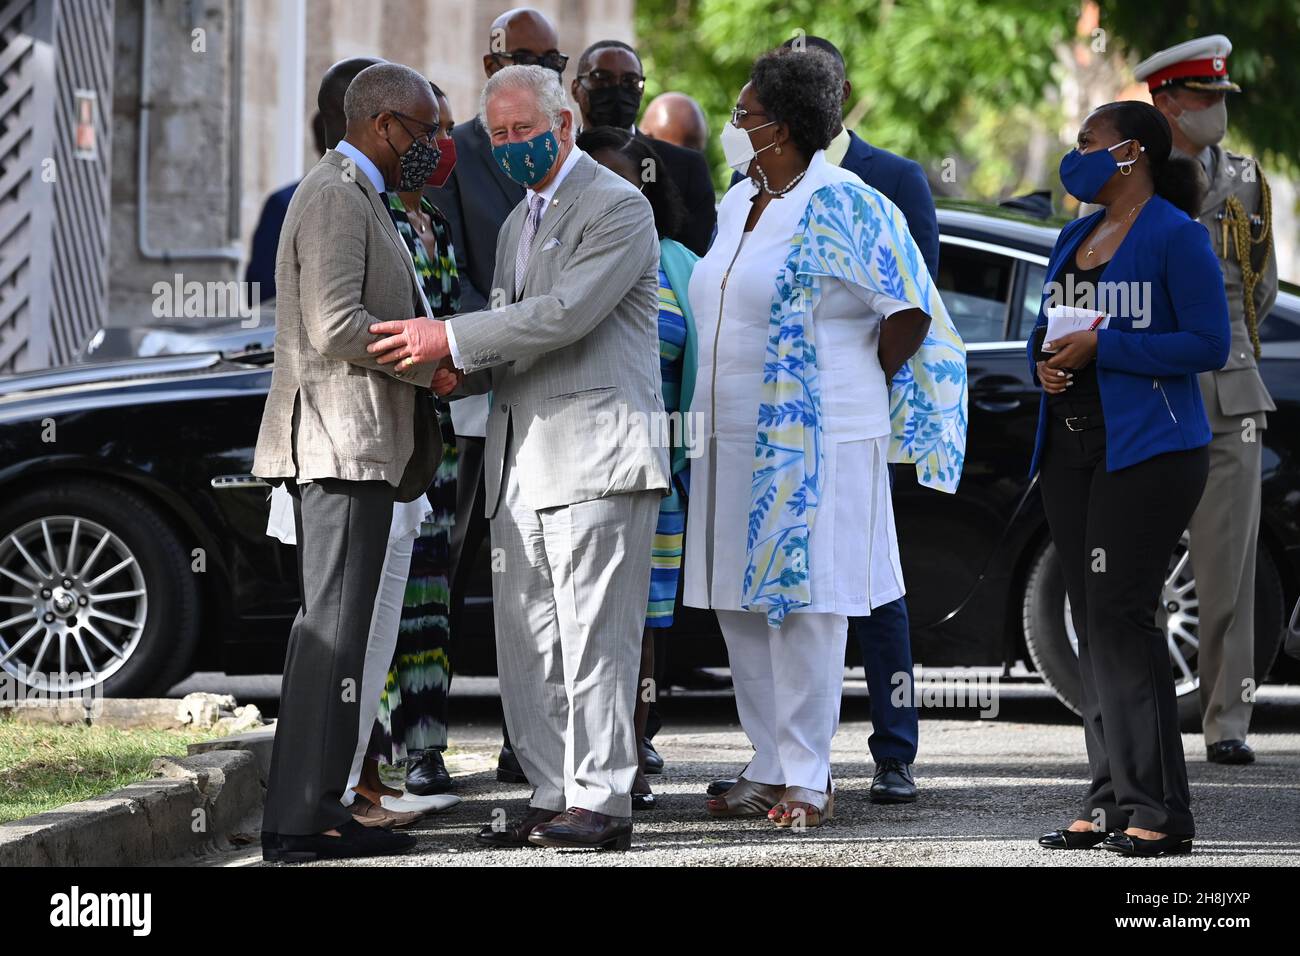 Der Prinz von Wales und die Premierminister von Barbados, Mia Mottley (zweite rechts), besuchen im Anschluss an eine Zeremonie anlässlich des Übergangs des Landes zu einer republik innerhalb des Commonwealth das Nationalarchiv in Bridgetown, Barbados. Bilddatum: Dienstag, 30. November 2021. Stockfoto